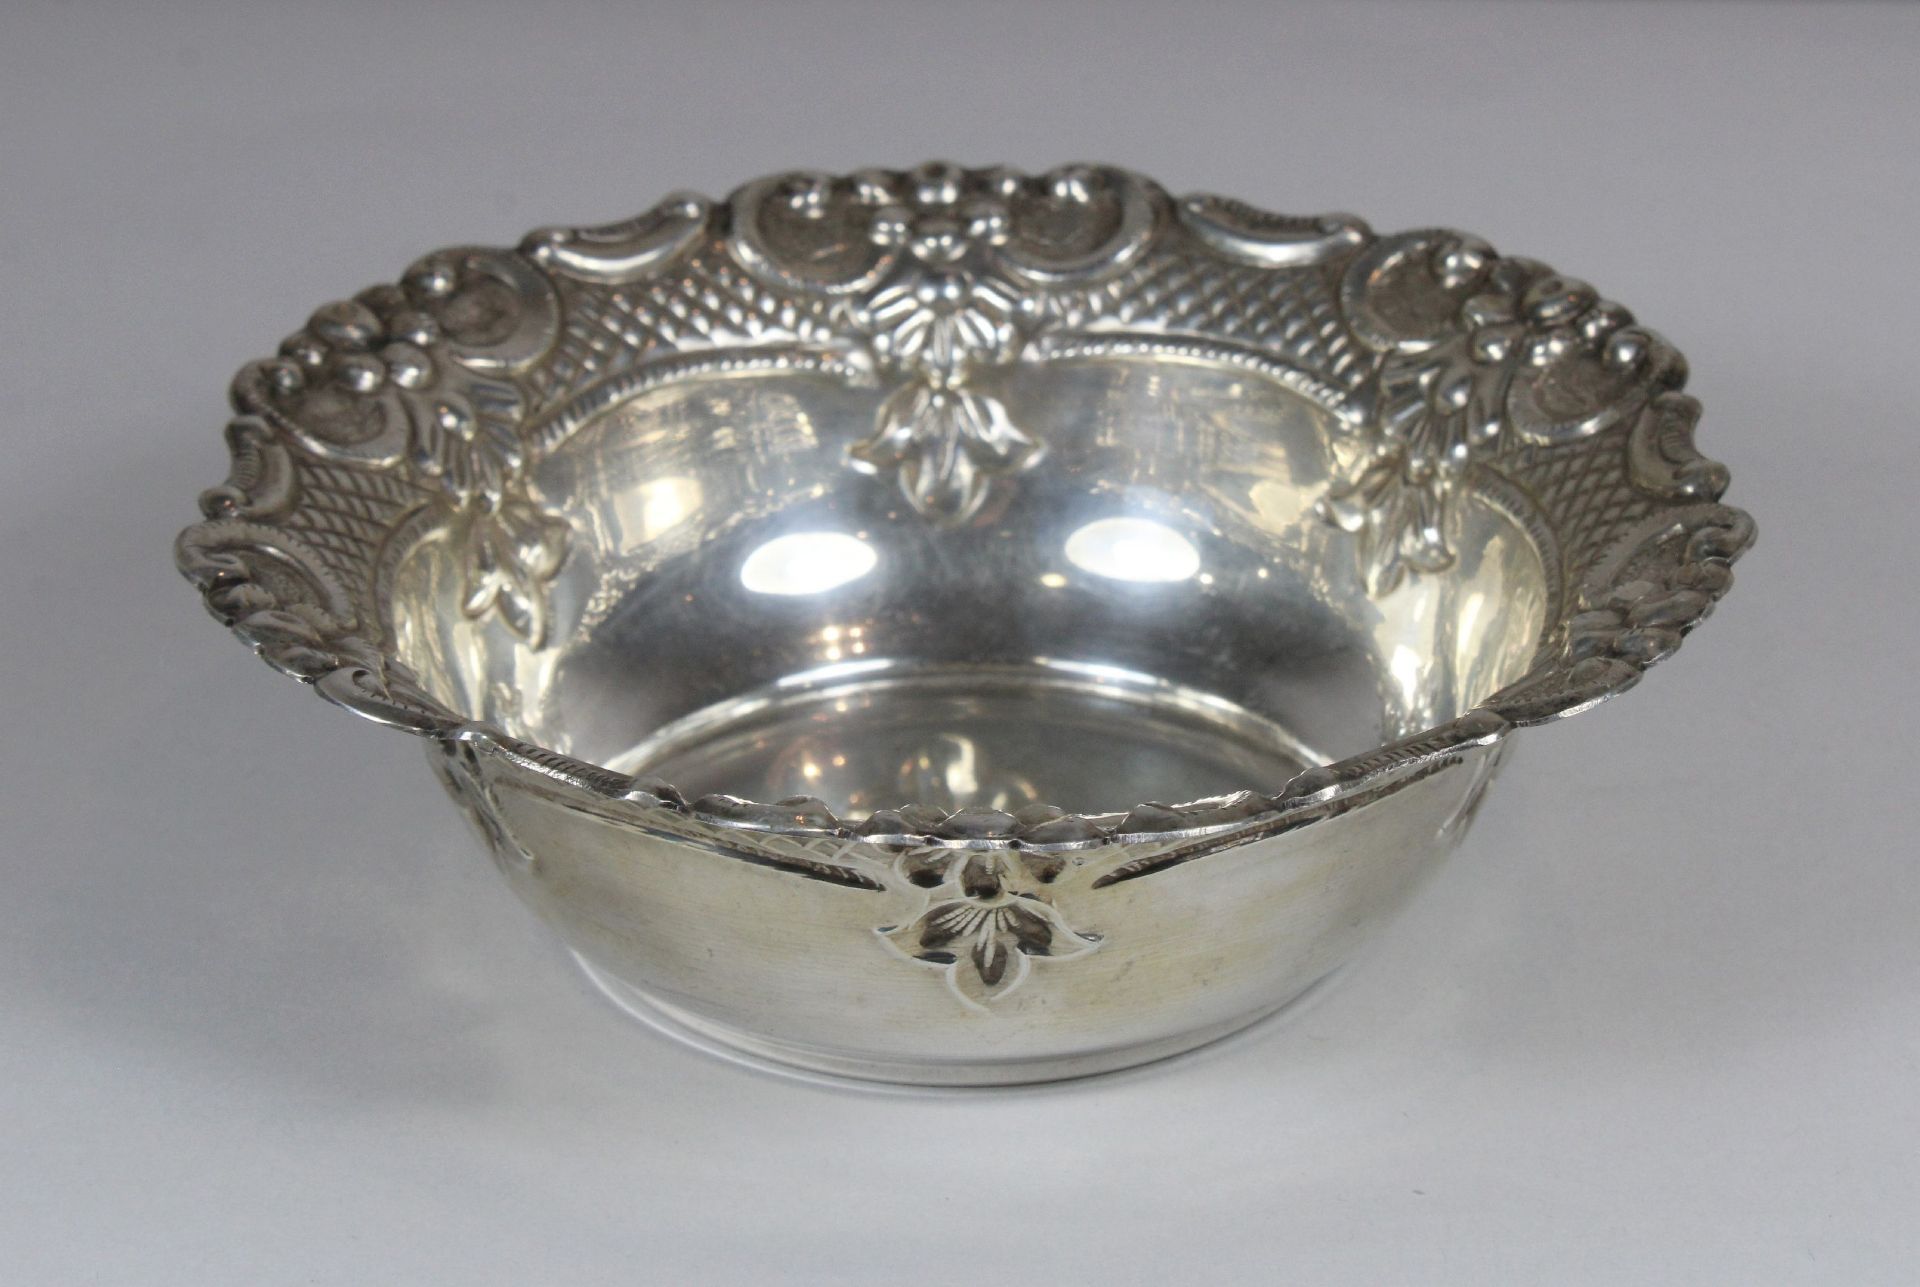 Schale, Silber, Durchmesser 16,5 cm, Gewicht 140 gr., guter, altersbedingter Zustand. - Bild 2 aus 2